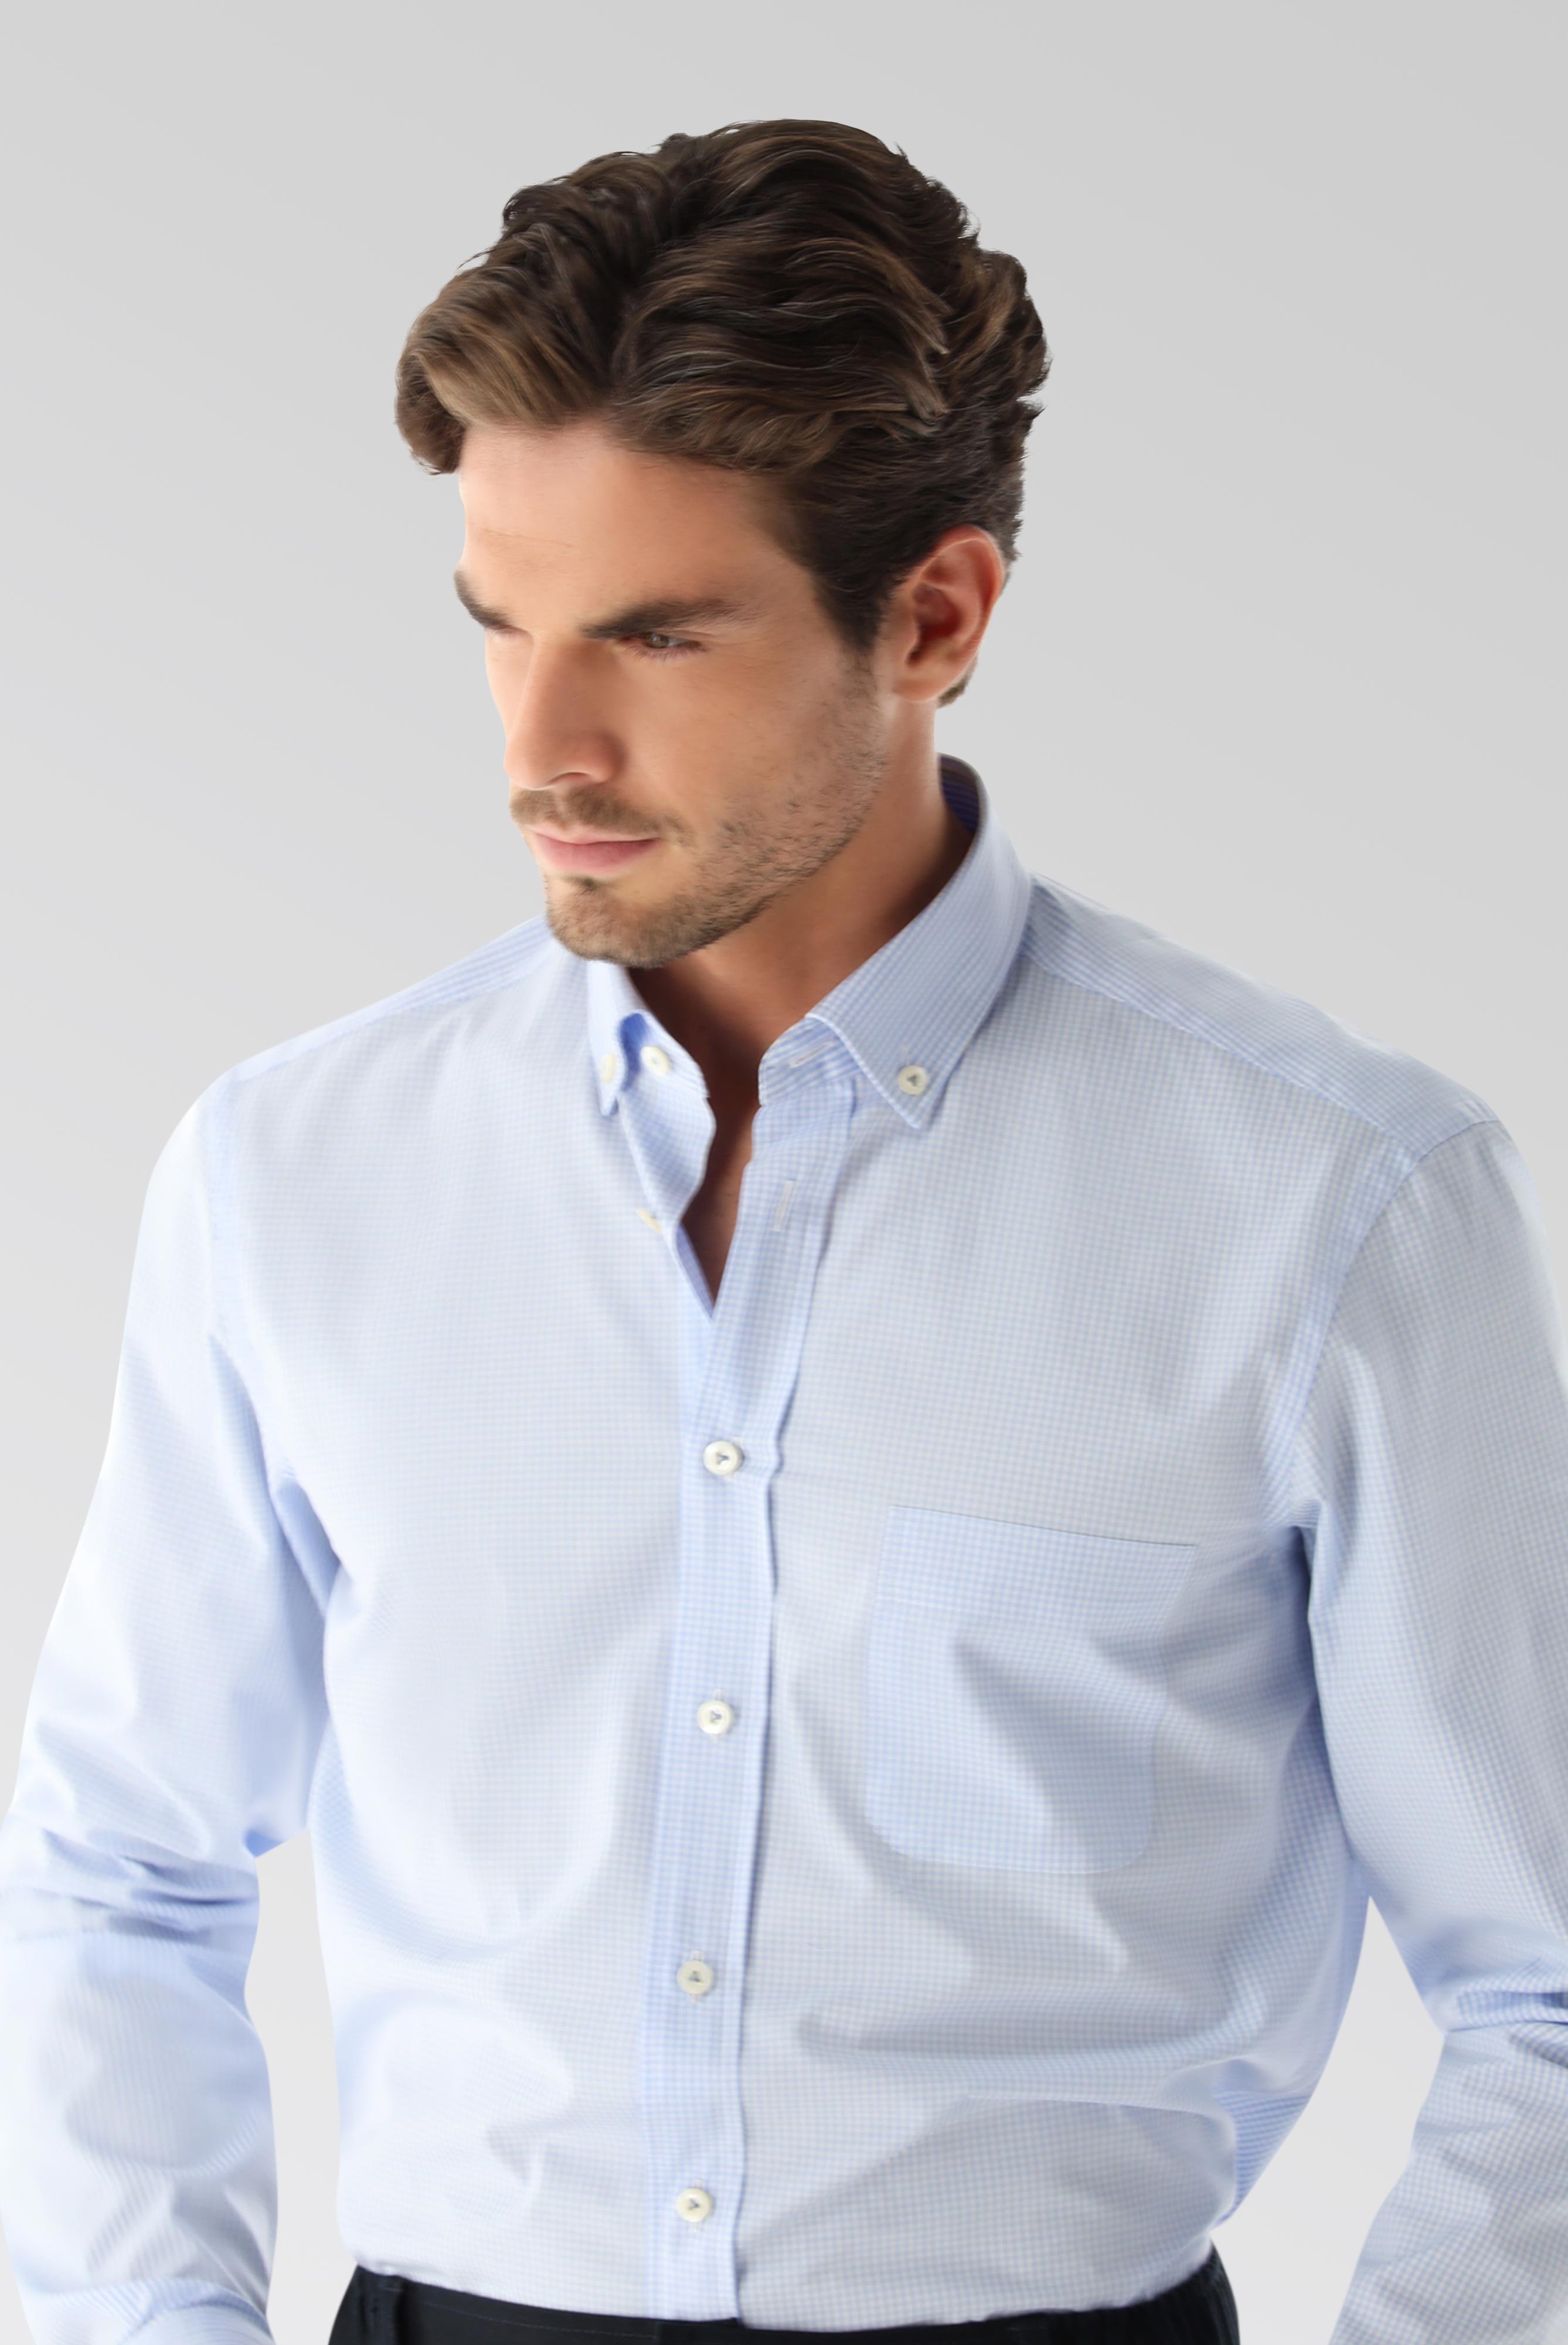 Bügelleichte Hemden+Bügelfreies Karohemd mit Button-Down-Kragen+20.2013.AV.141787.720.37